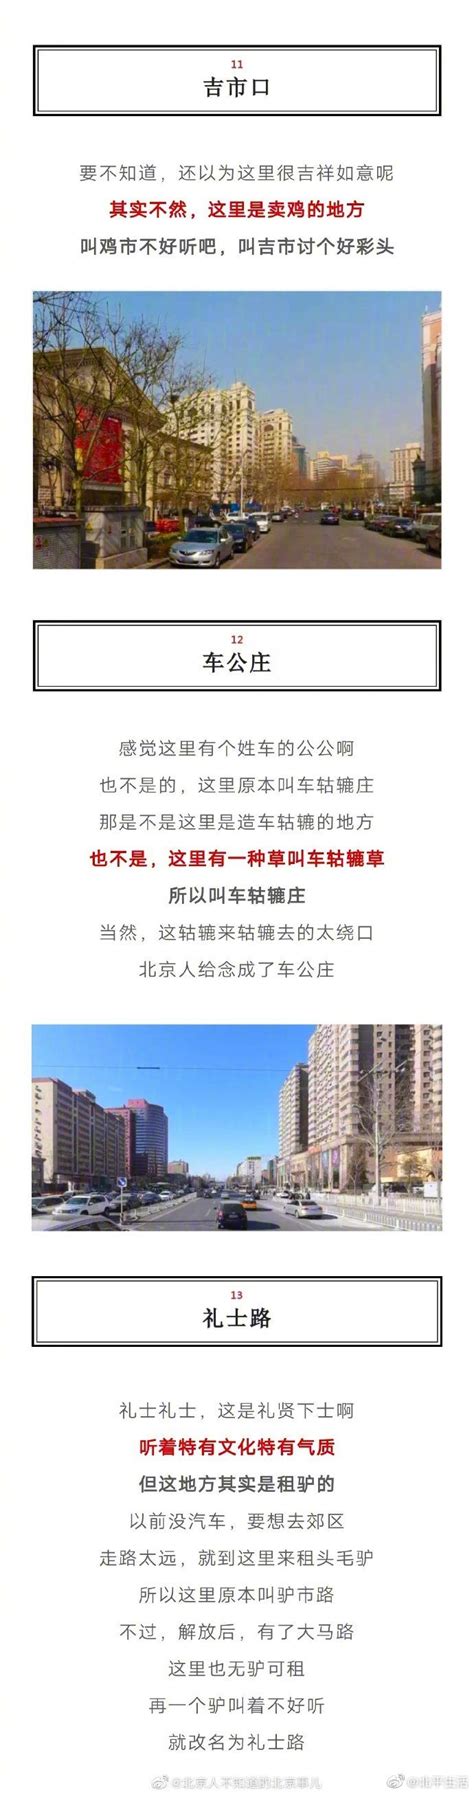 Acer设立北京公主坟服务站 加强城西服务_天极网